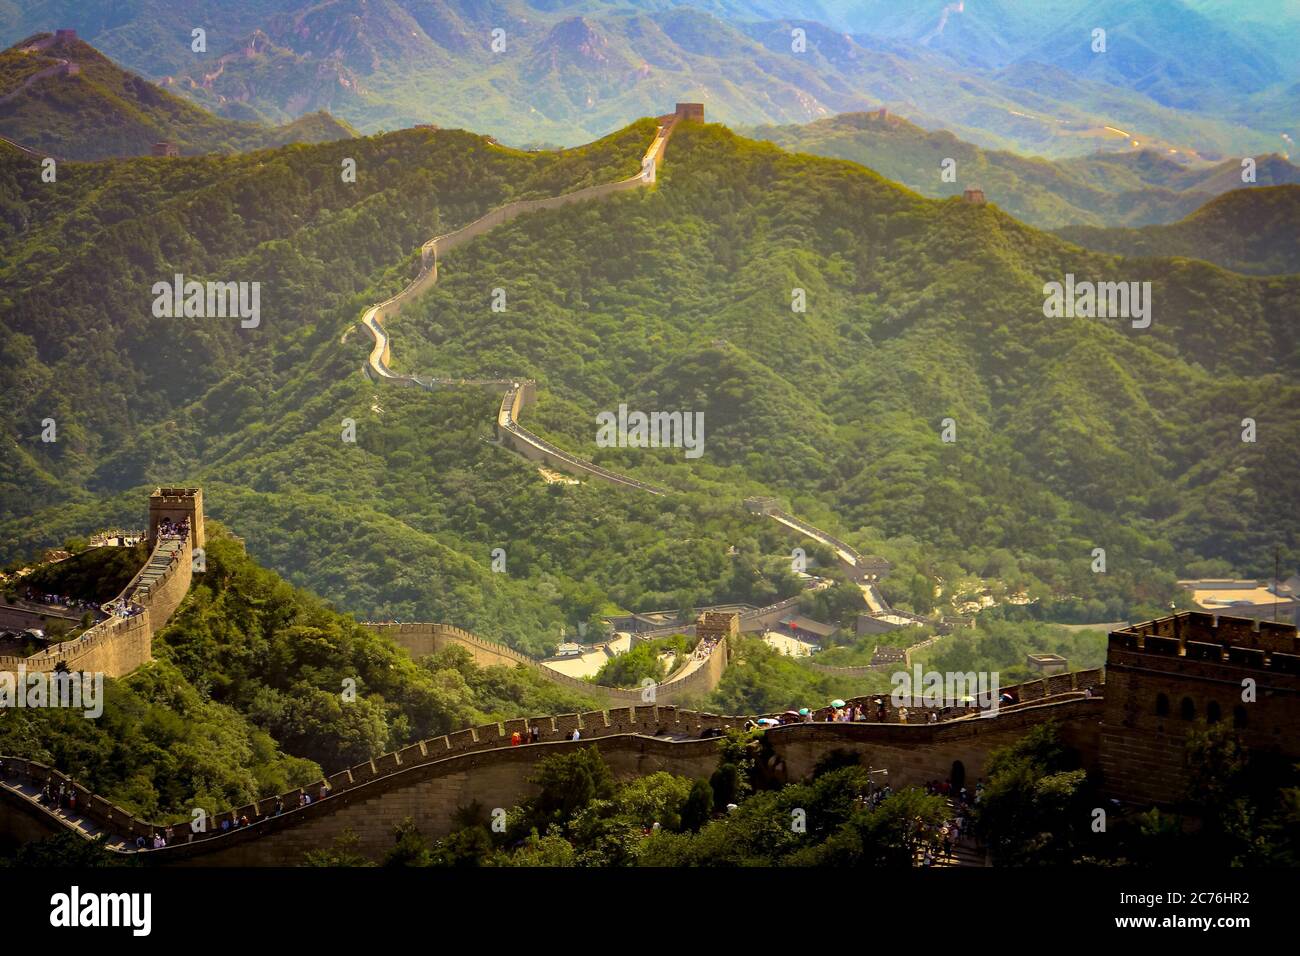 Gran Muralla de China en Badaling, Distrito de Yanqing, municipio de Beijing, China, importante monumento mundial y una de las nuevas siete Maravillas del Mundo. Foto de stock